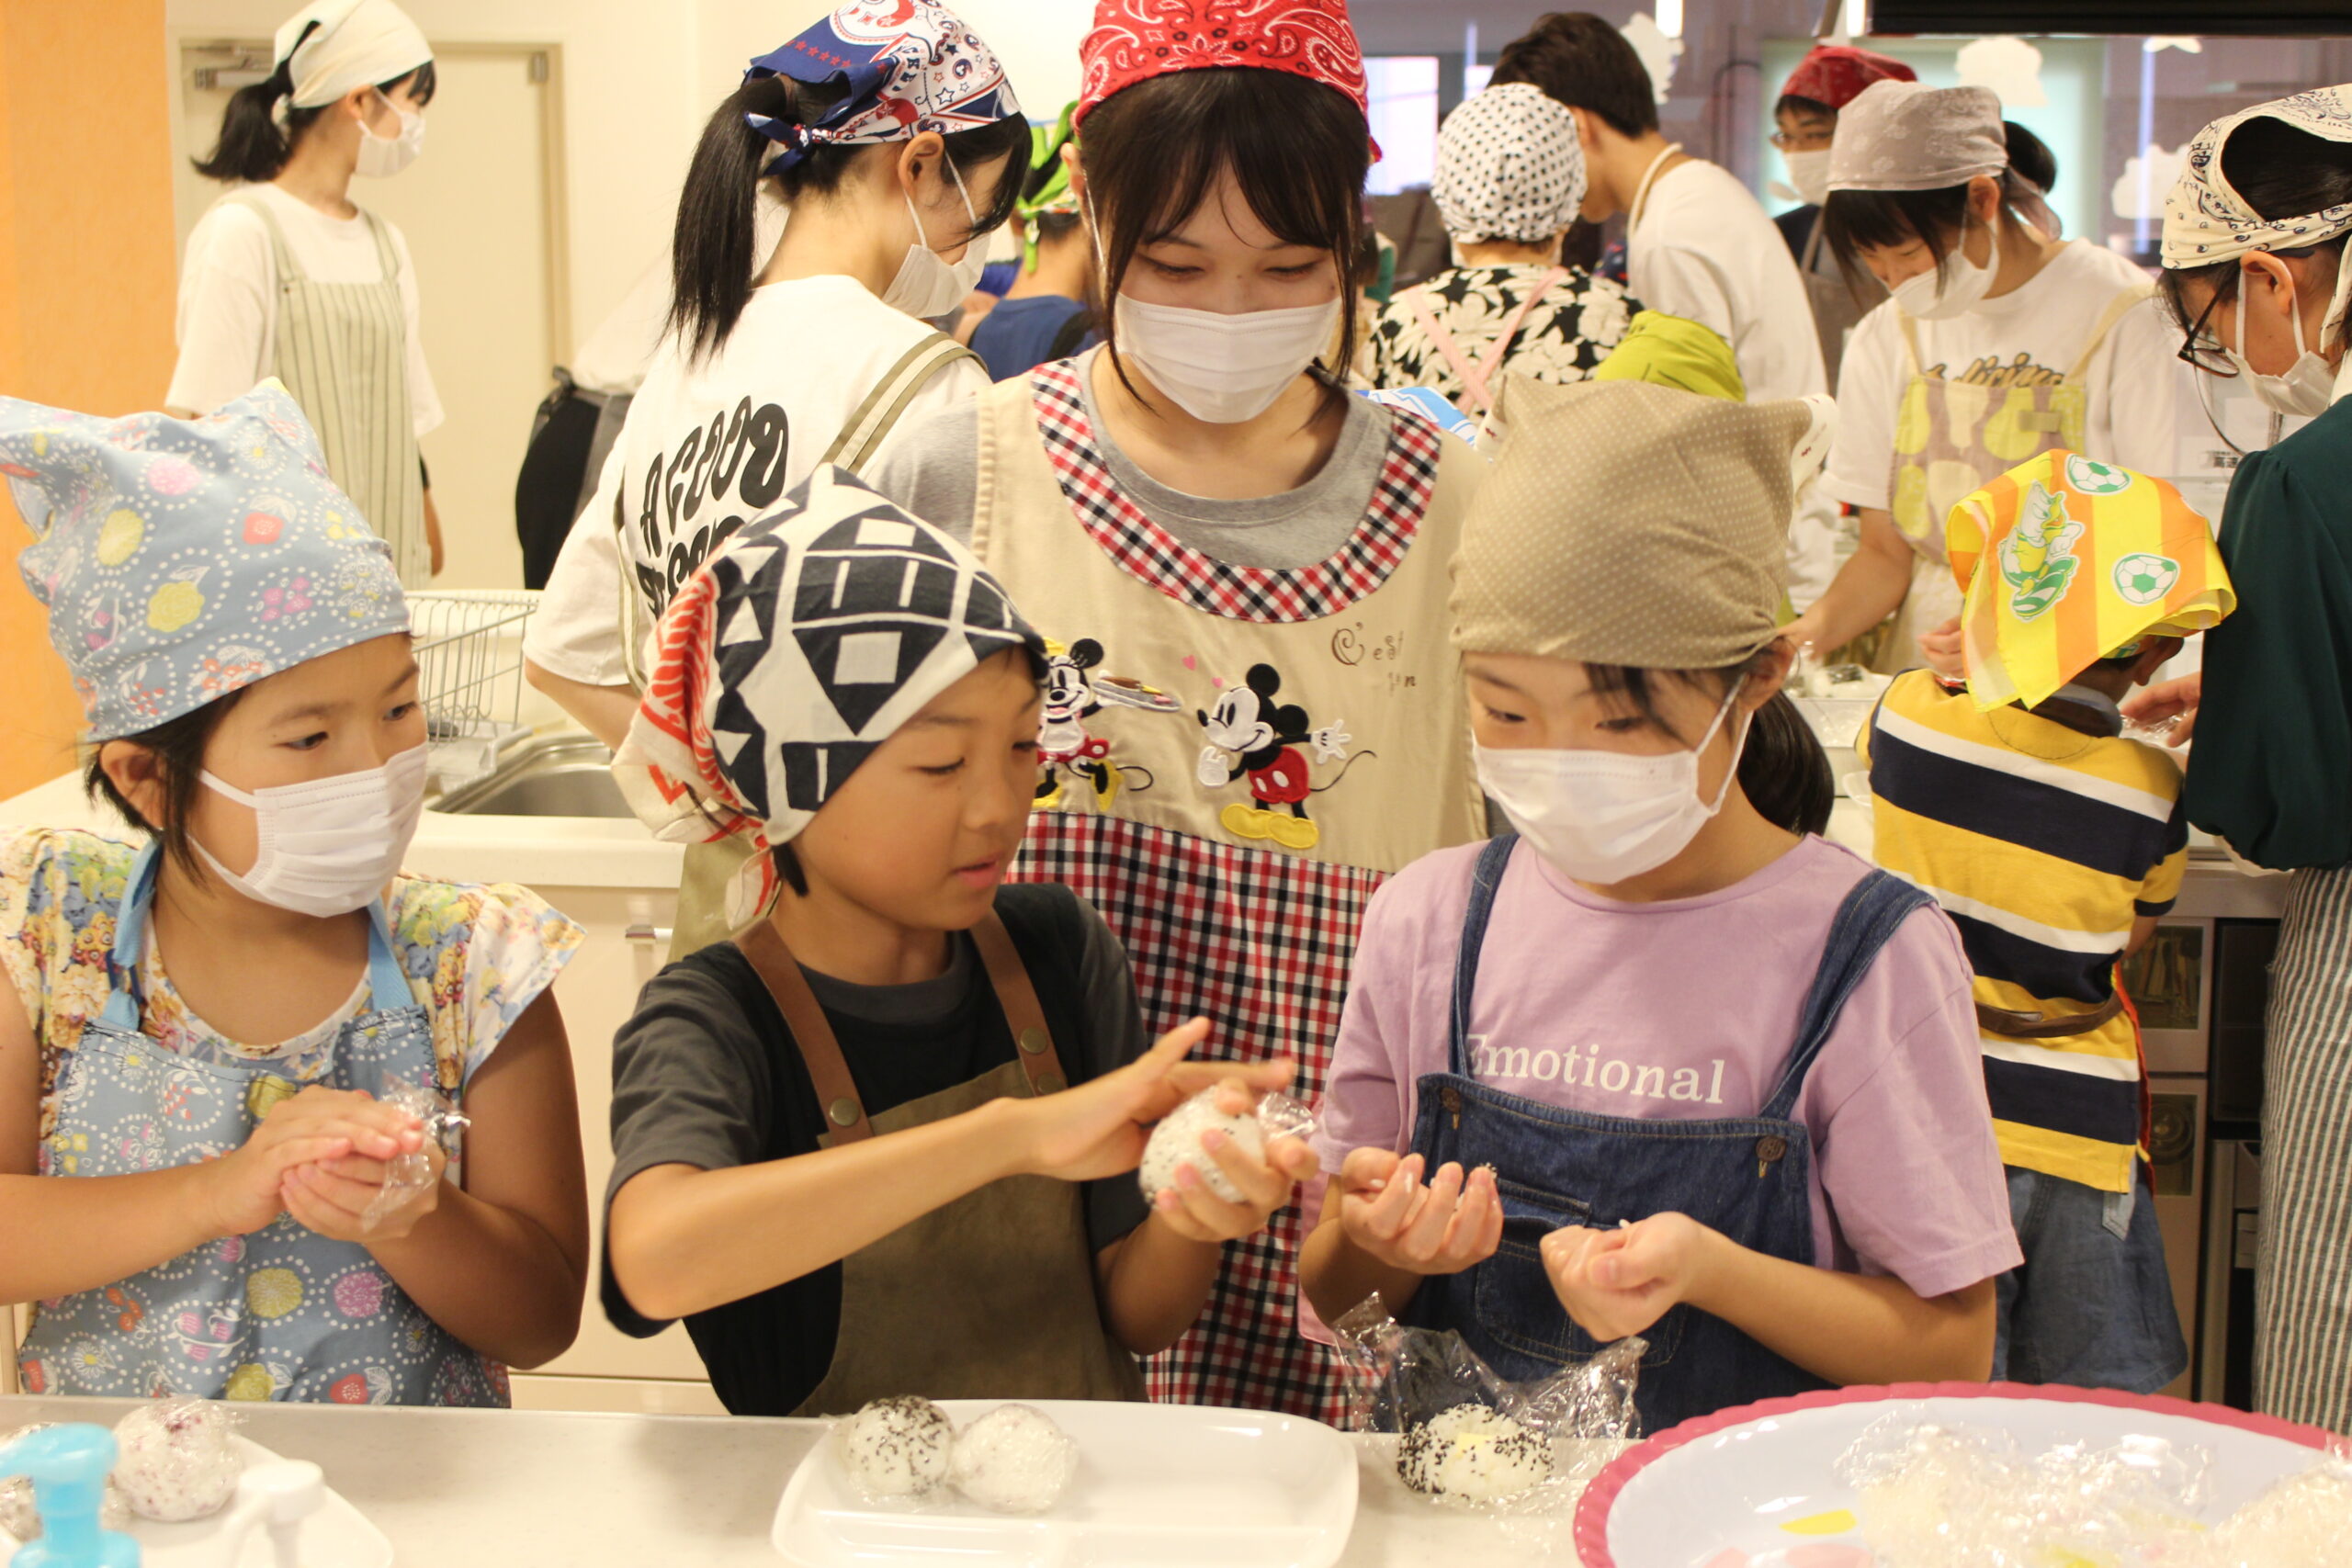 【日本ガス協会のページ】地域活性化に協力　事例(1)福島ガス/子ども食堂で楽しい調理体験を、ショールームを活用した居場所づくり